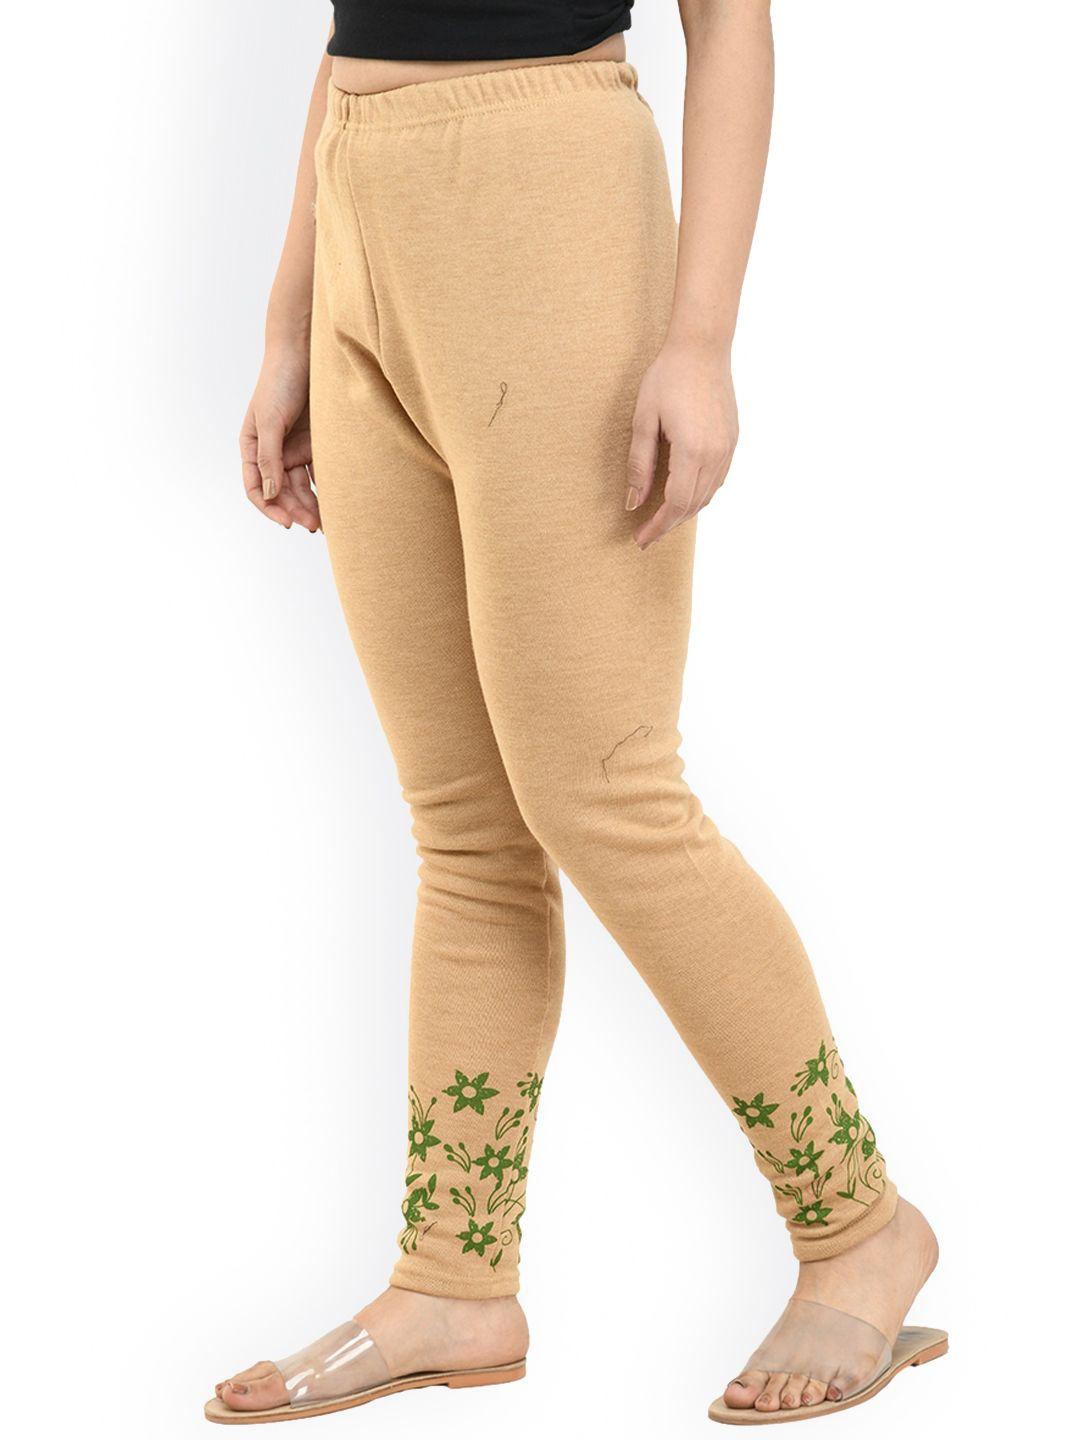 indiweaves floral printed wool ankle-length leggings